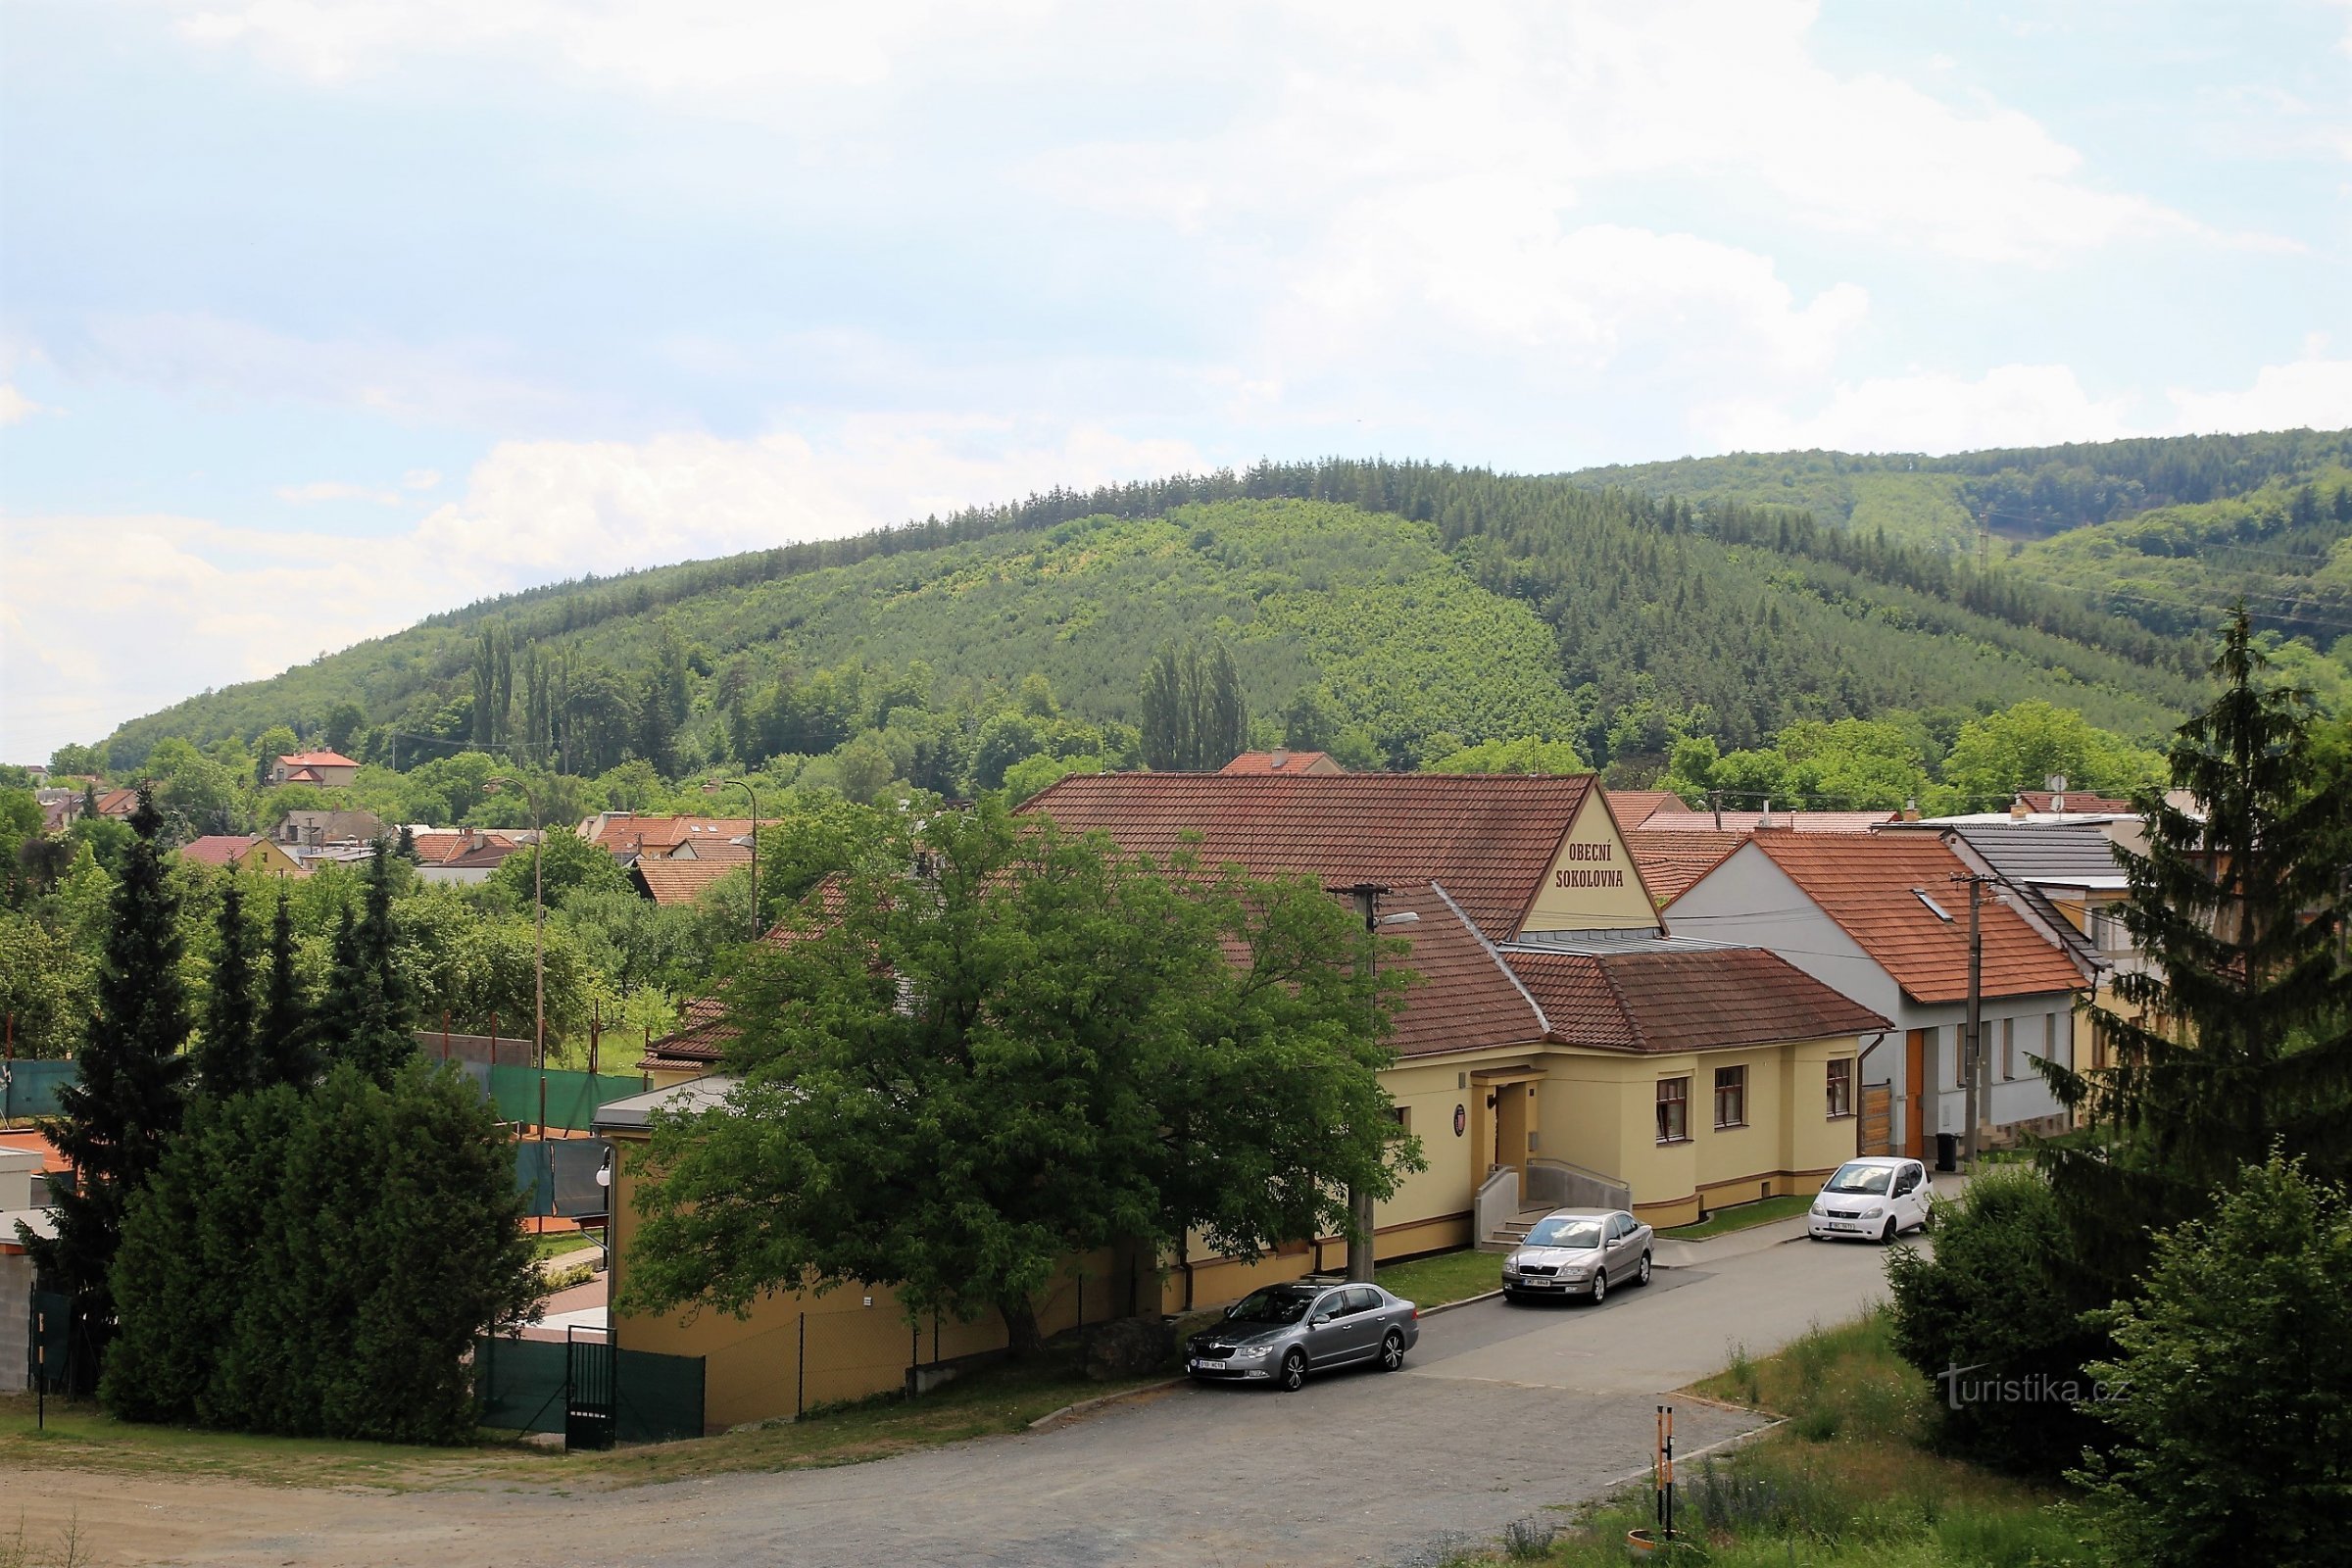 Ostrá hora se eleva directamente sobre el pueblo de Česká, detrás domina la cresta principal de Baby